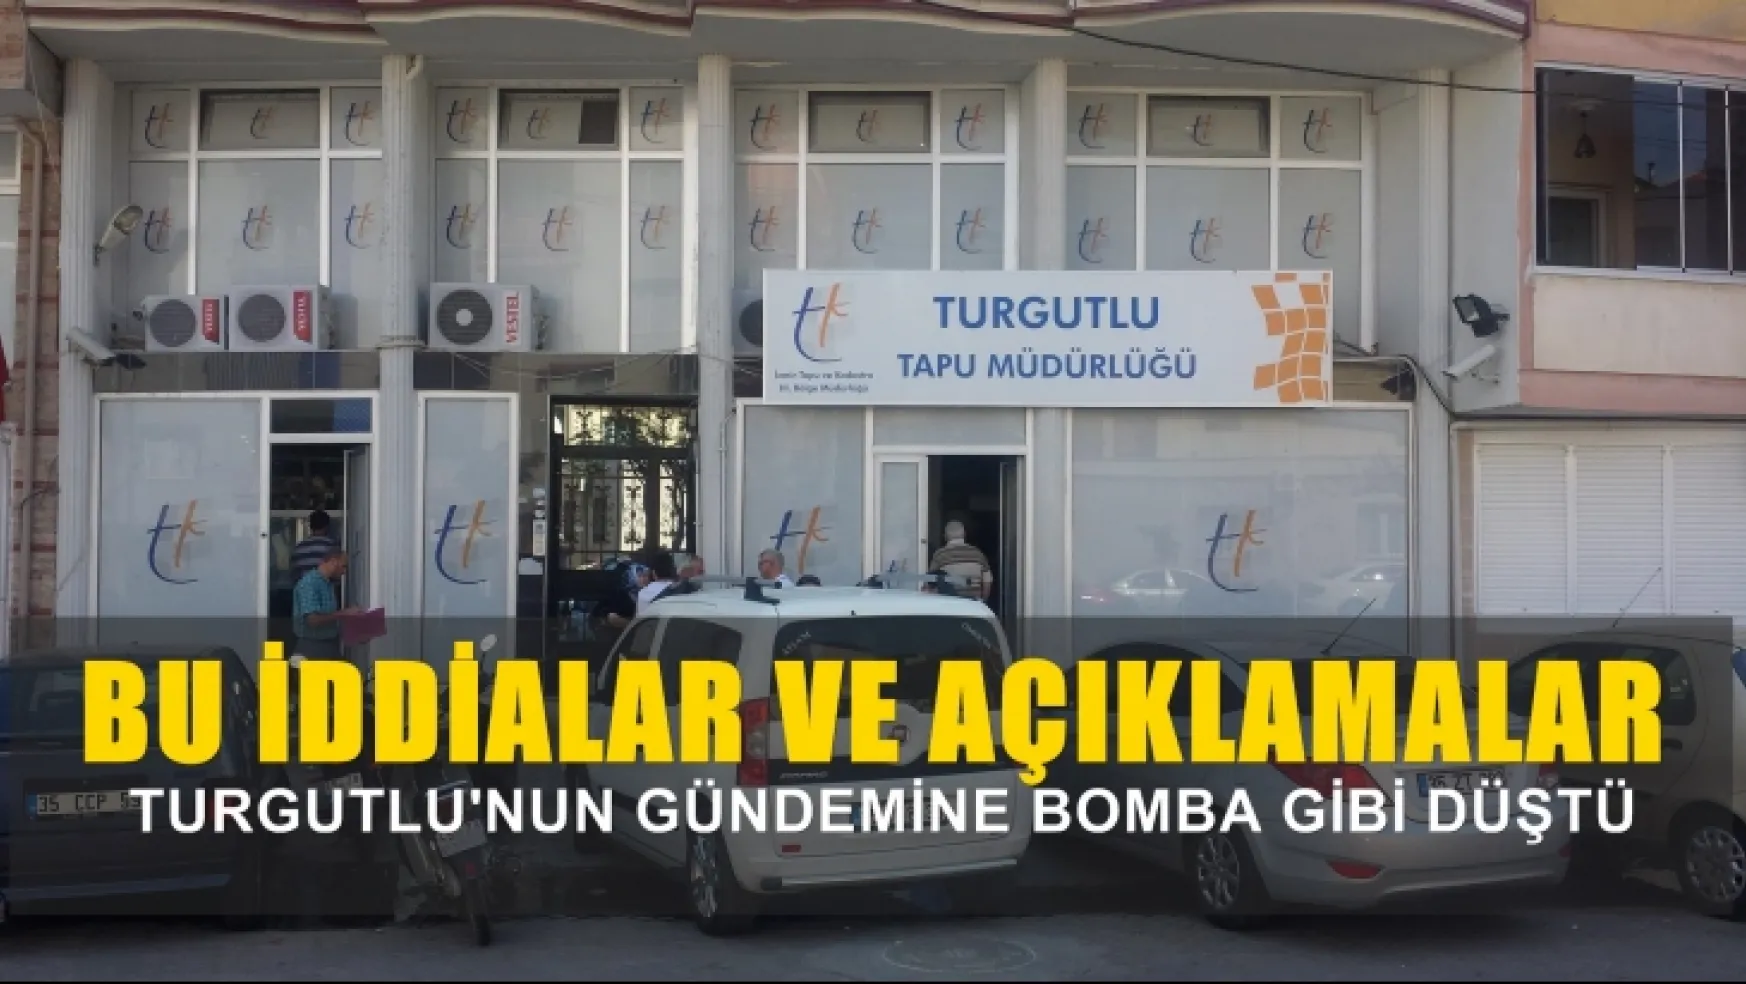 Turgutlu Tapu Müdürlüğünde sahte evrakla işlem yapıldığı iddiası gündeme bomba gibi düştü